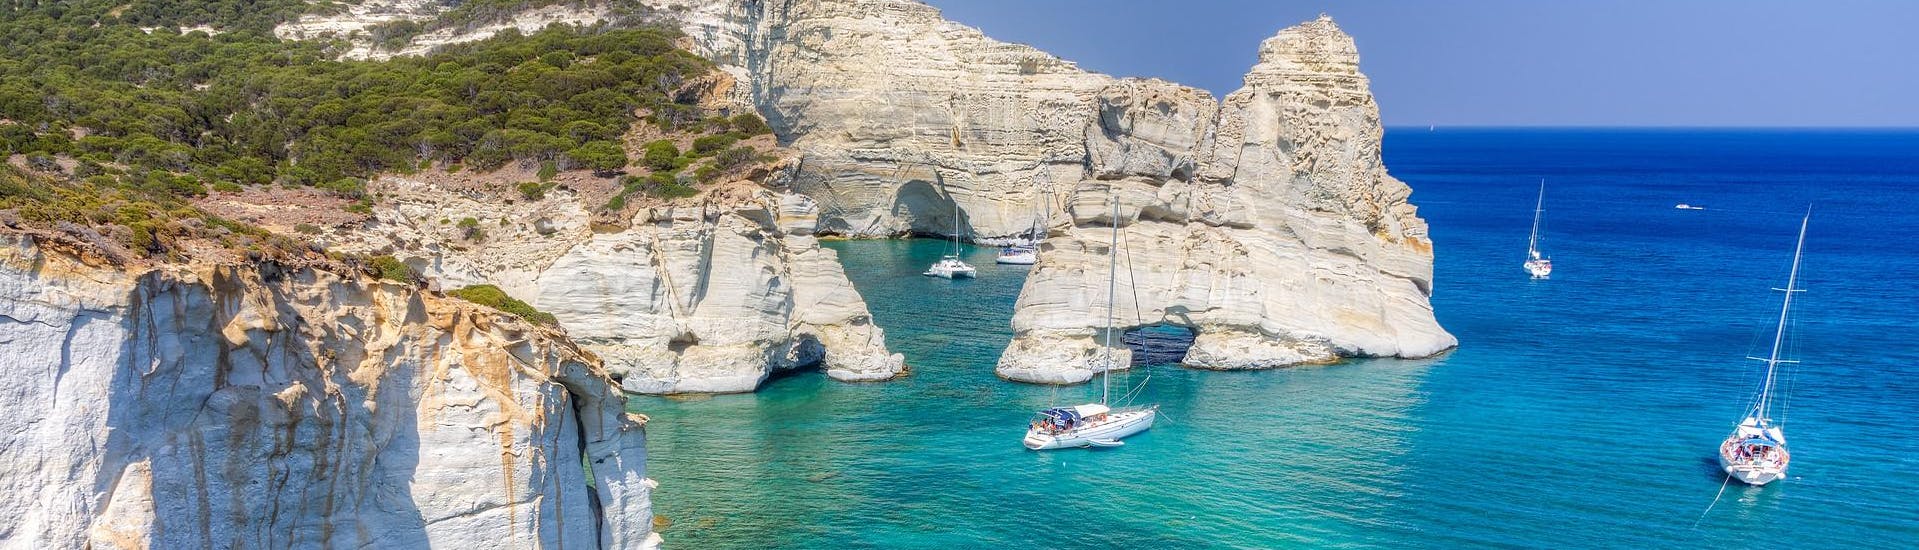 Le bellissime formazioni rocciose di Kleftiko, che potrete ammirare con una gita in barca a Milos.